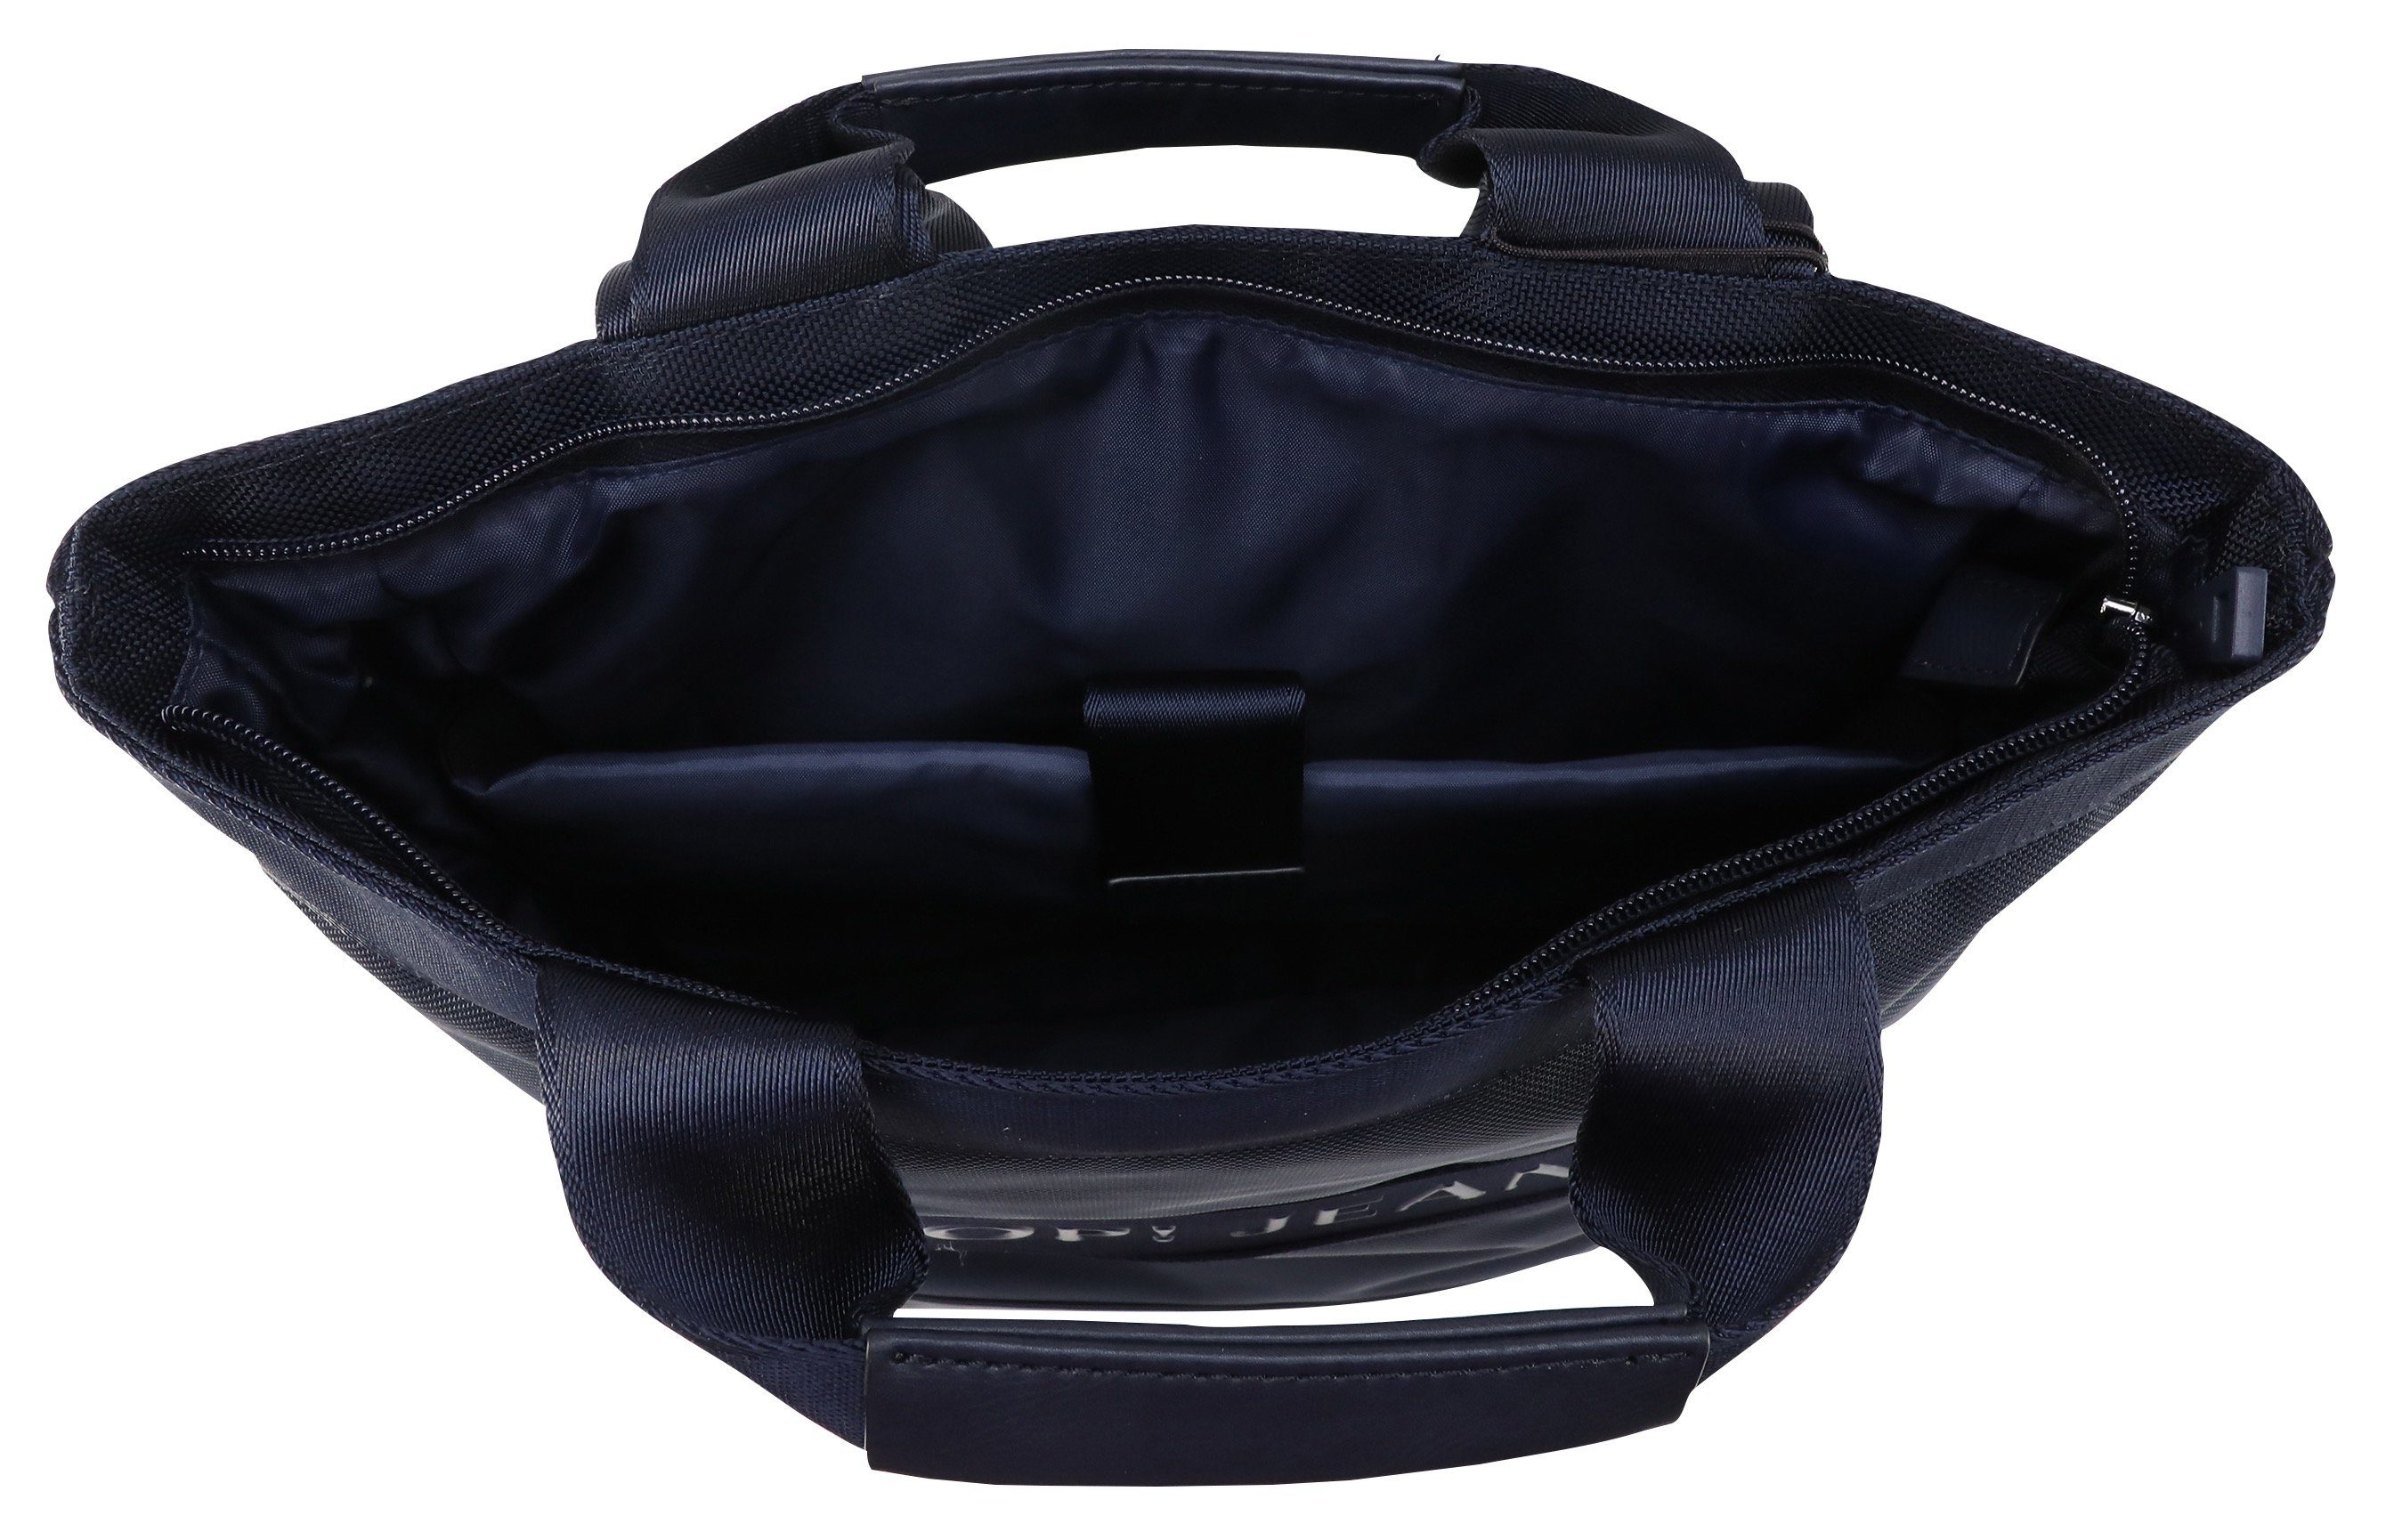 falk darkblue Cityrucksack backpack modica svz, Reißverschluss-Vortasche mit Jeans Joop